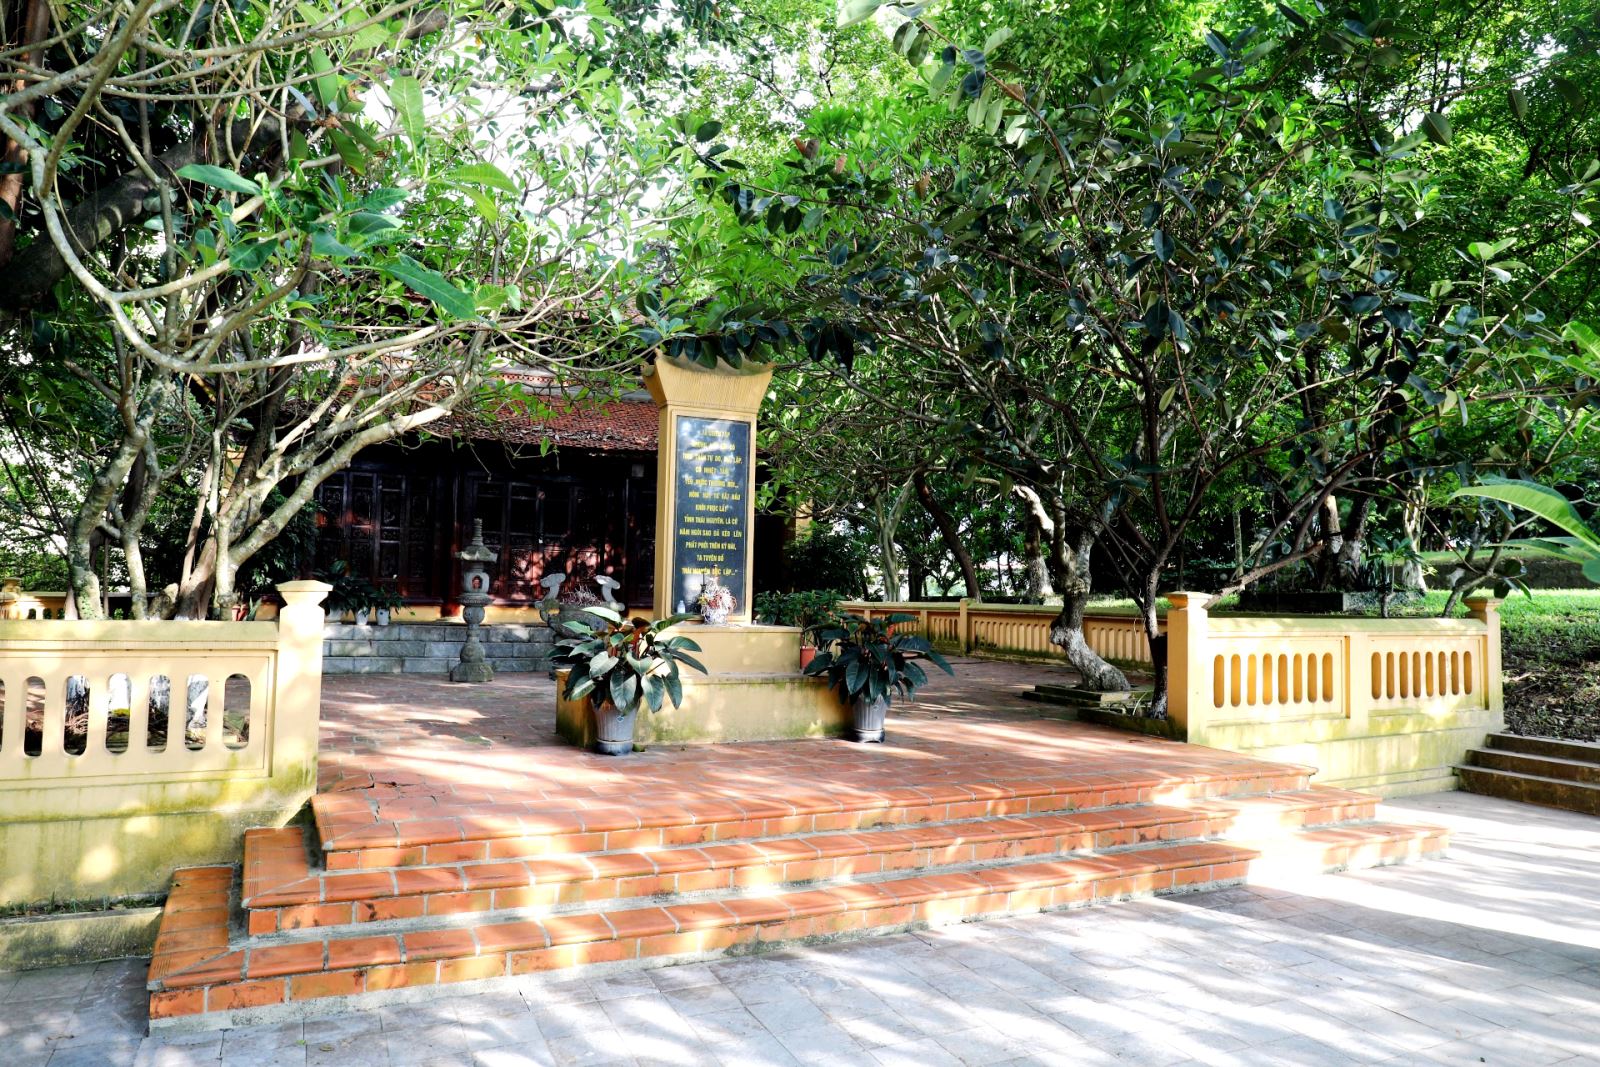  Đền thờ Đội Cấn nằm trên đồi trong khuôn viên Đài tưởng niệm các Anh hùng liệt sĩ tỉnh Thái Nguyên, thuộc phường Hoàng Văn Thụ, TP. Thái Nguyên. Ảnh: M.H